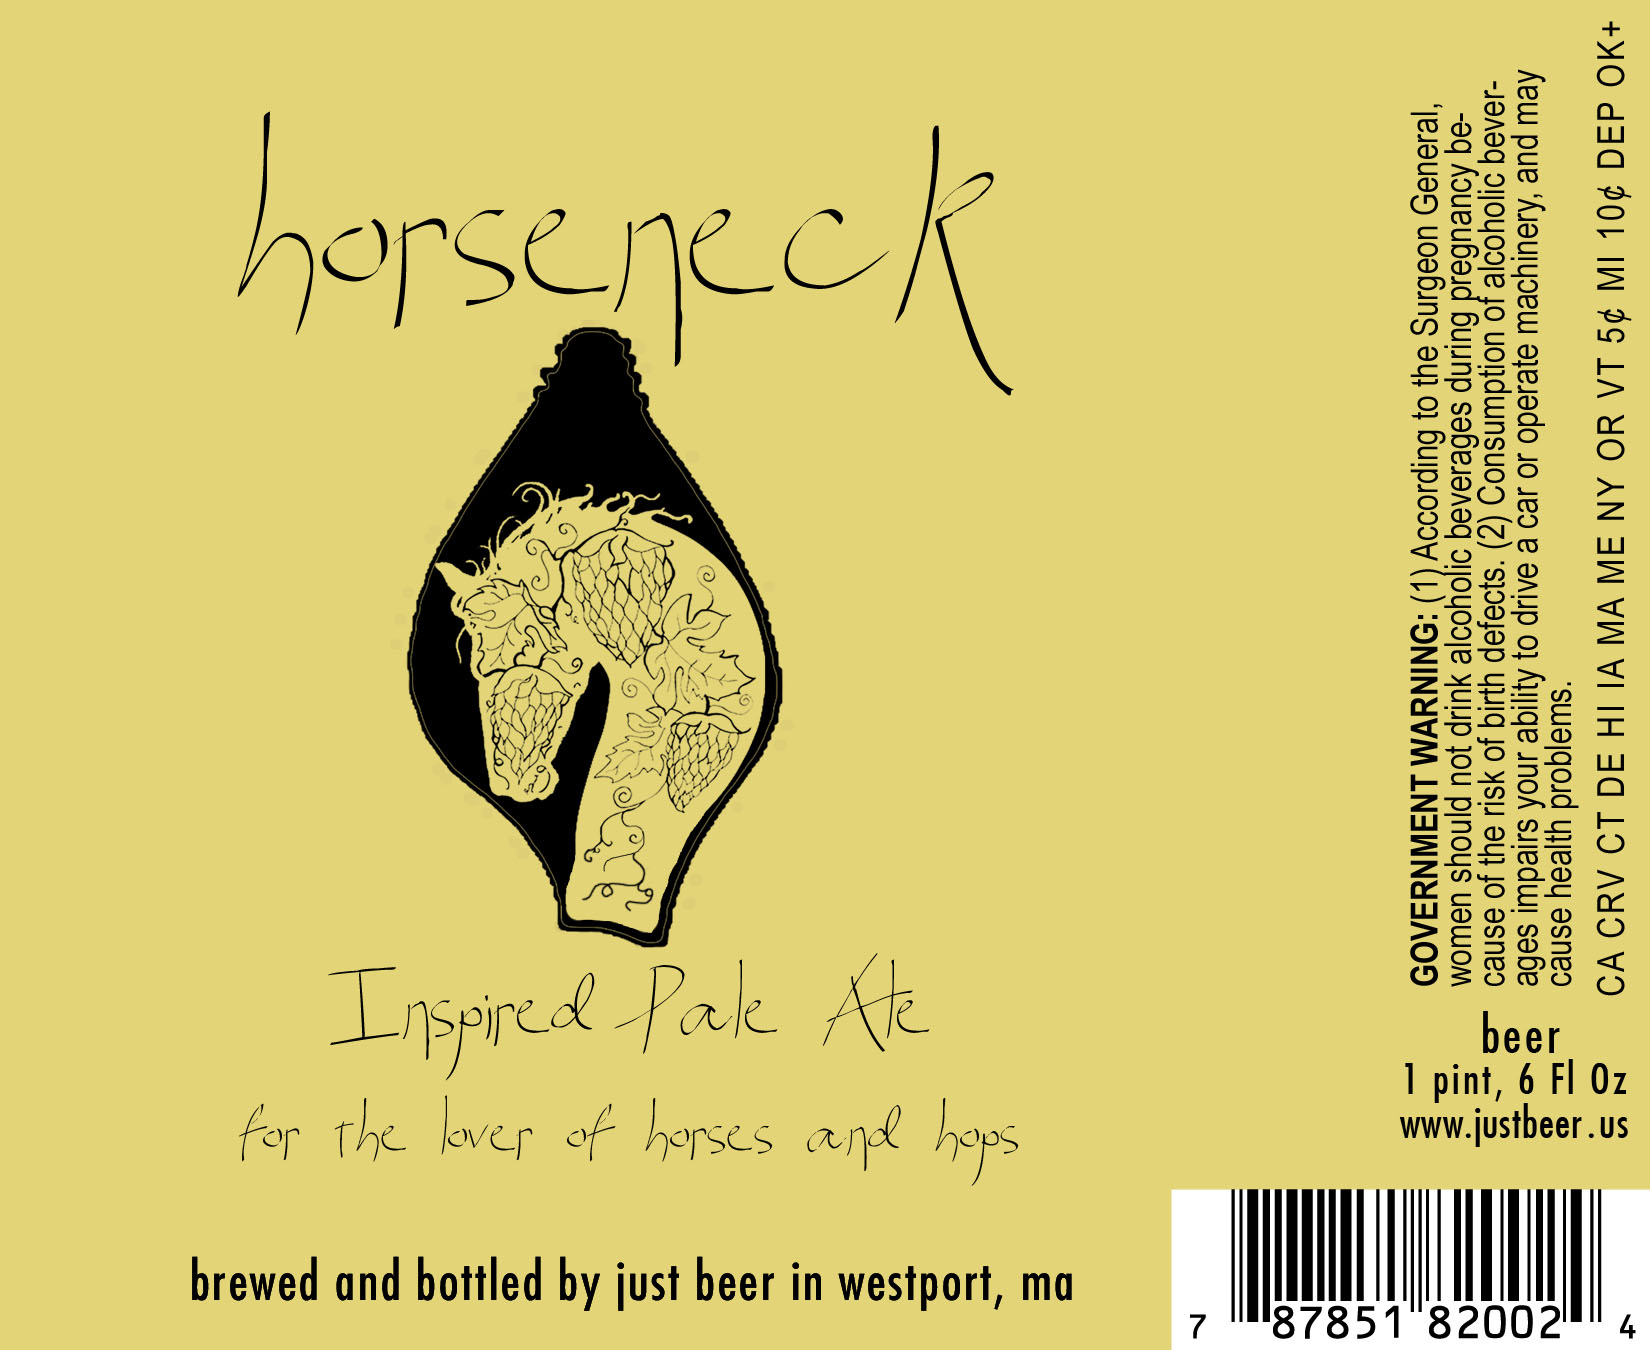 Just Beer Horseneck Golden IPA